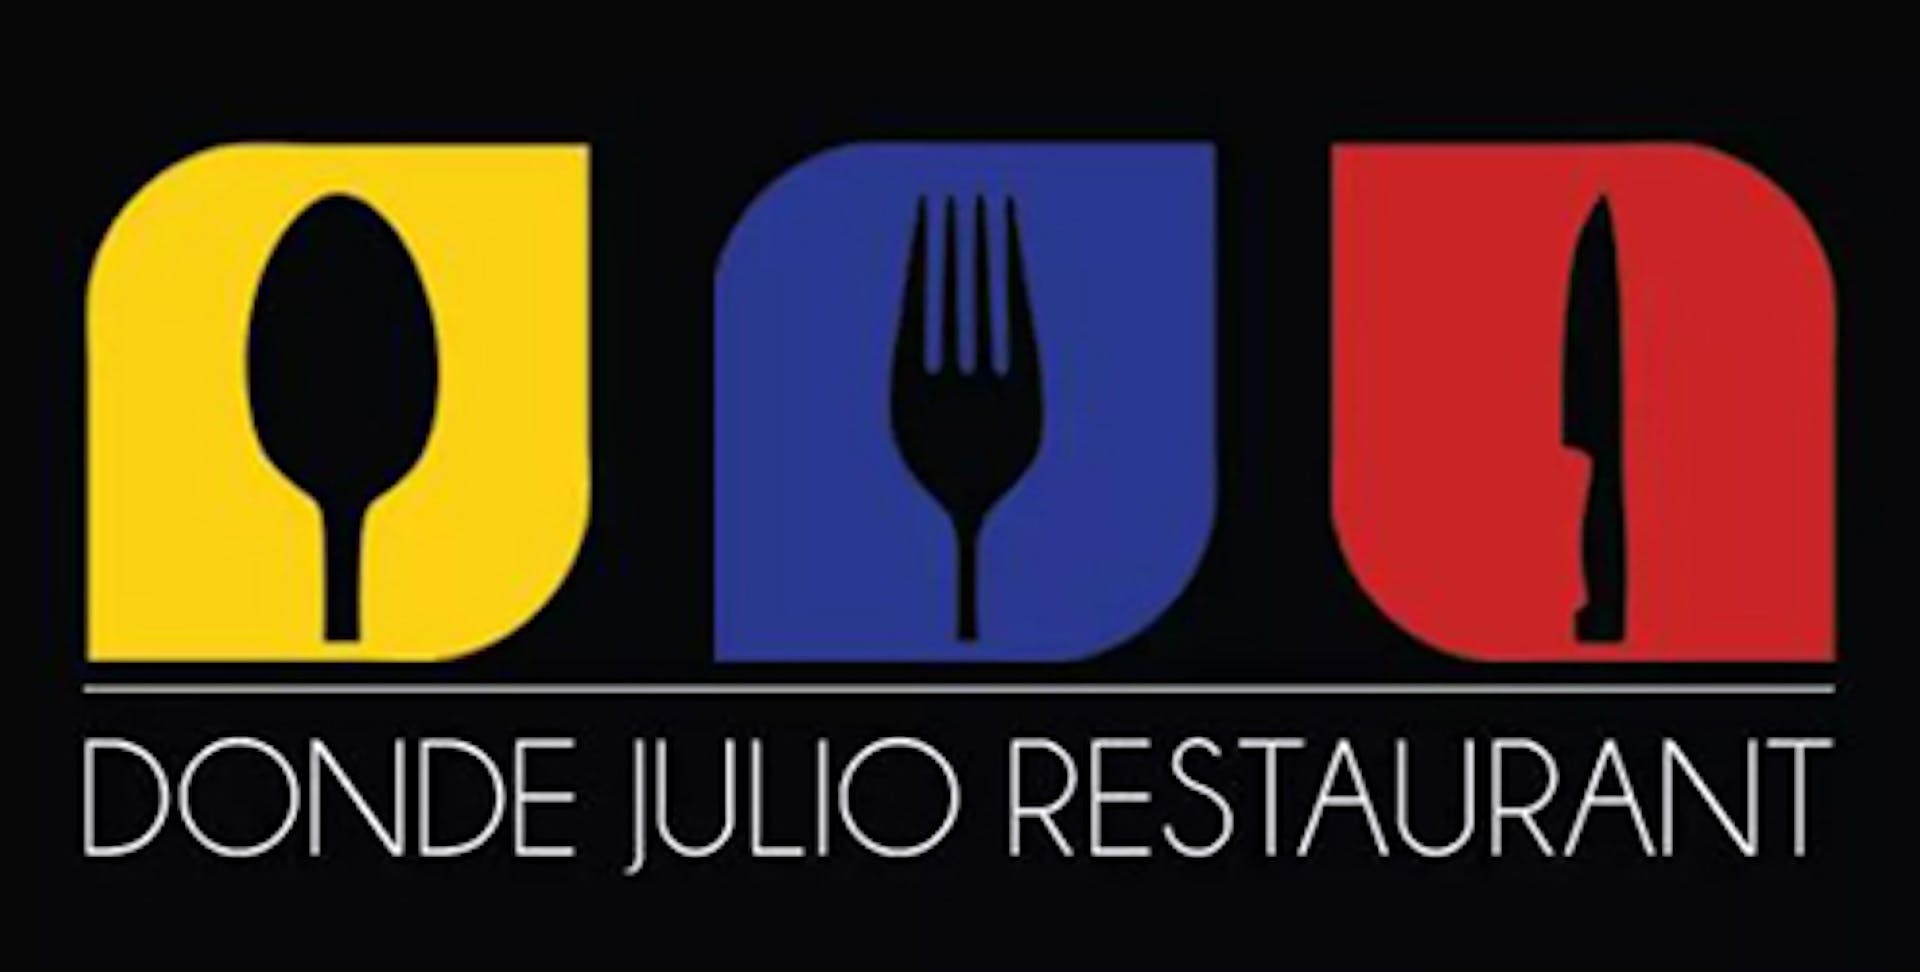 Donde Julio Restaurant